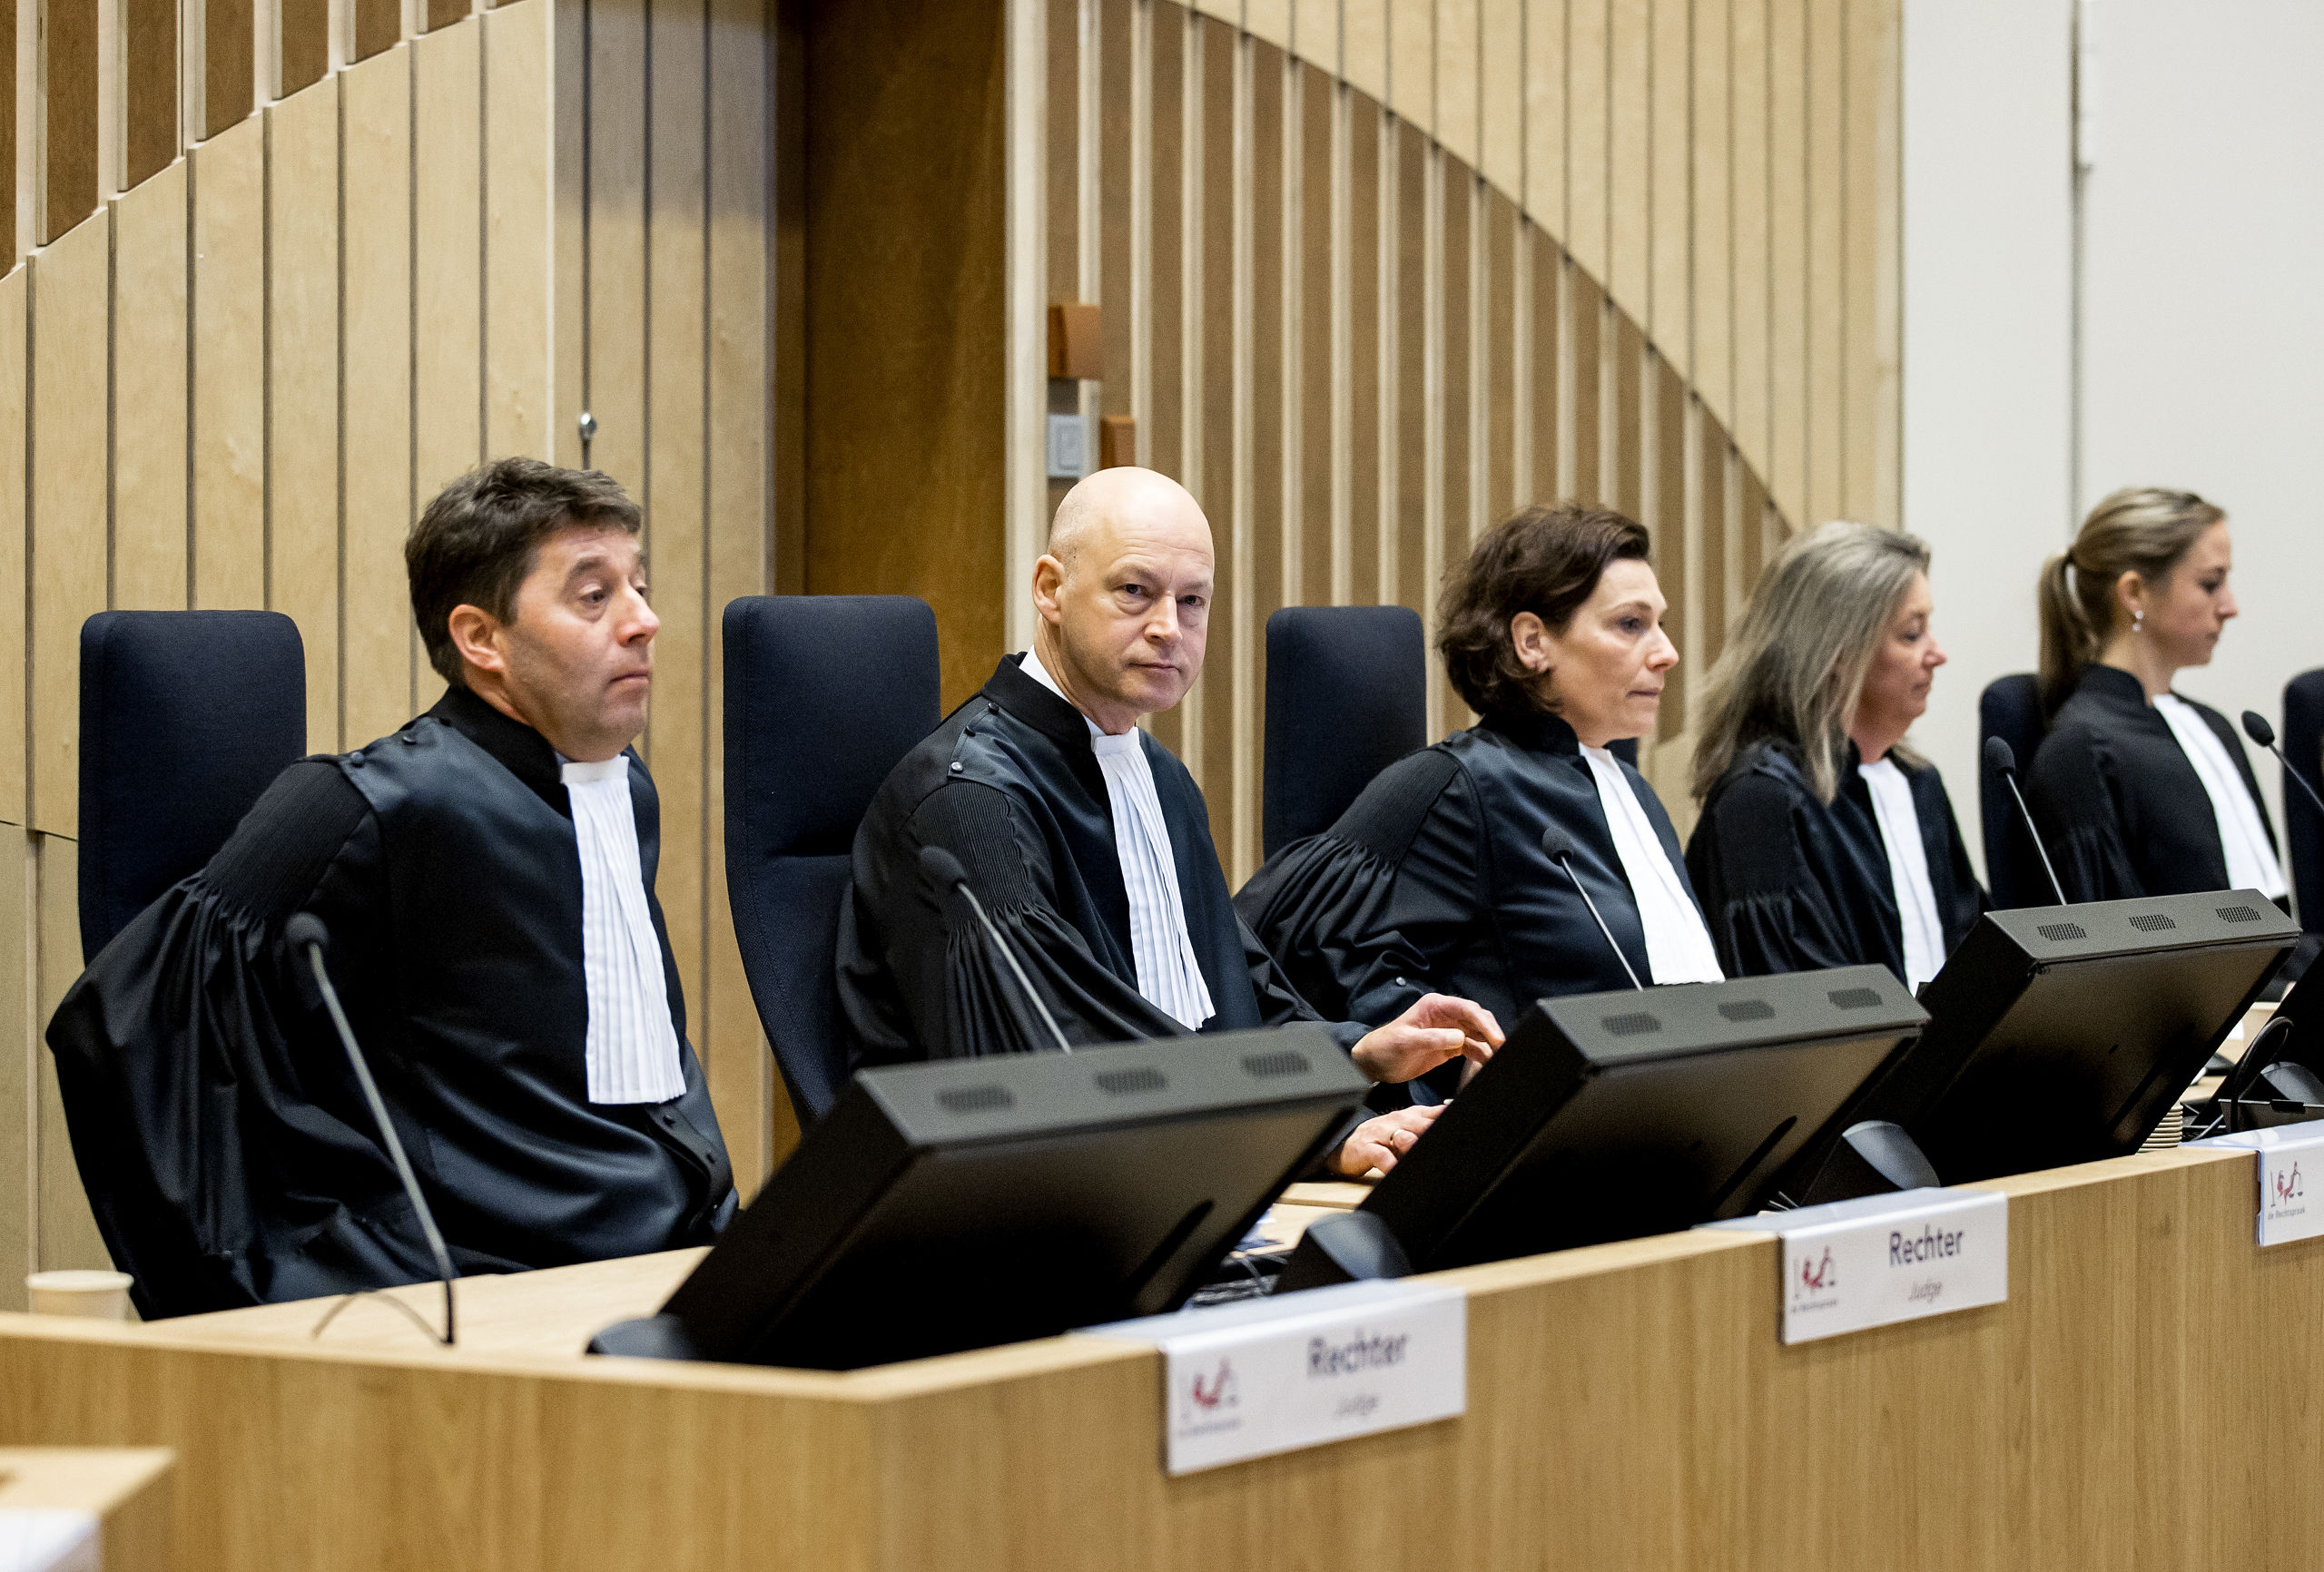 De rechtbank in de rechtszaal in het zwaarbeveiligde Justitieel Complex Schiphol, waar het internationale MH17-proces zal plaatsvinden